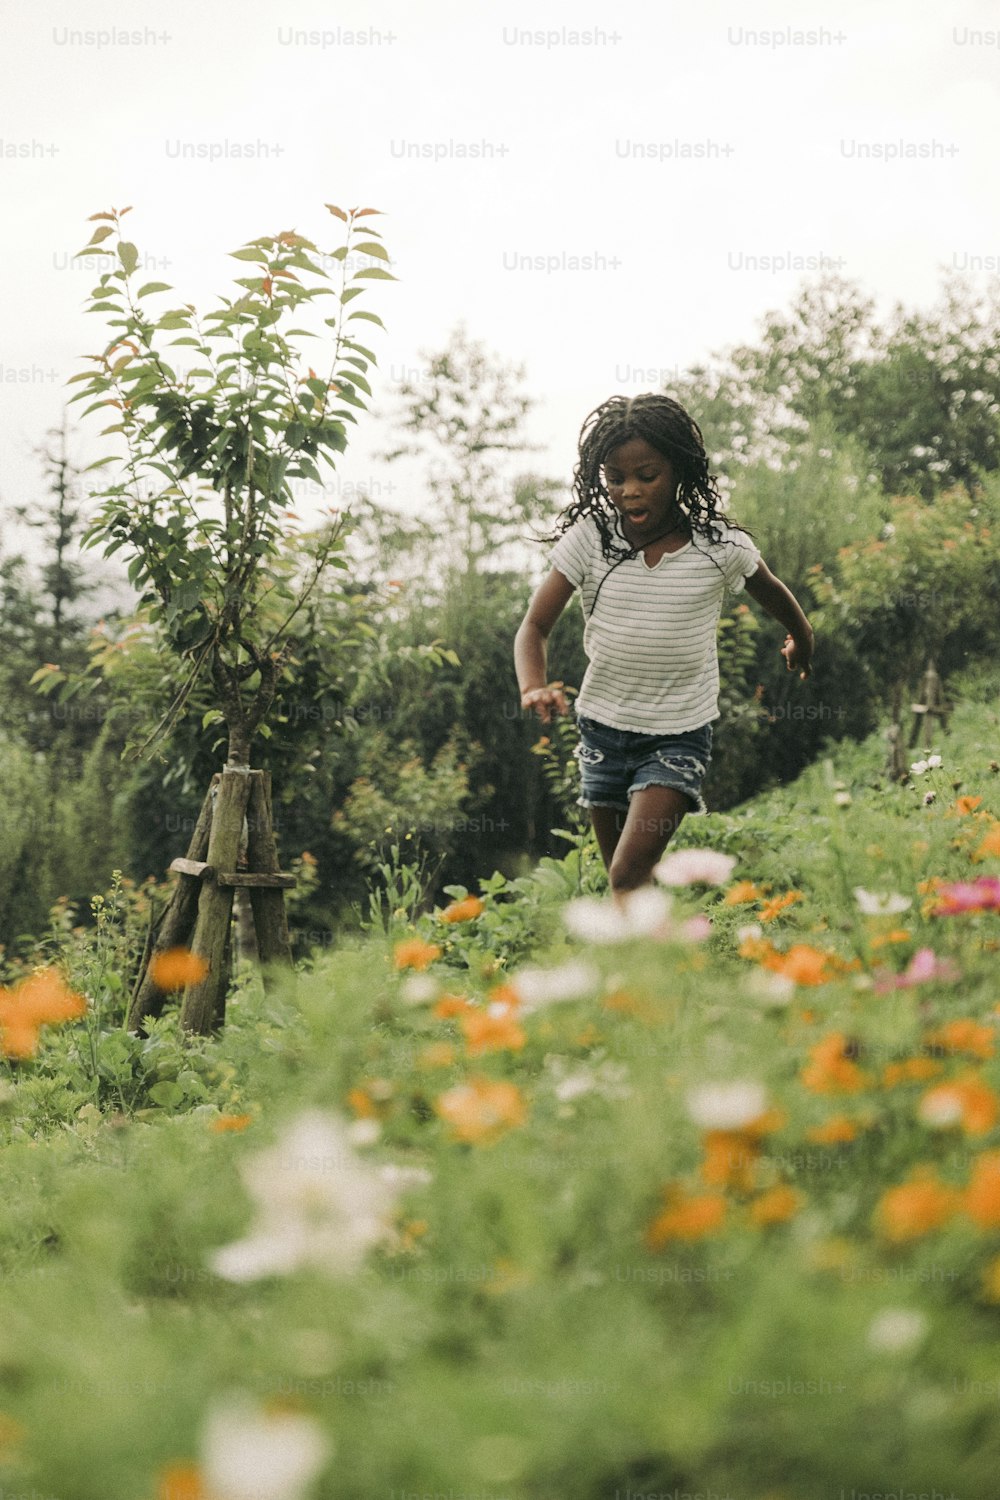 a little girl running through a field of flowers